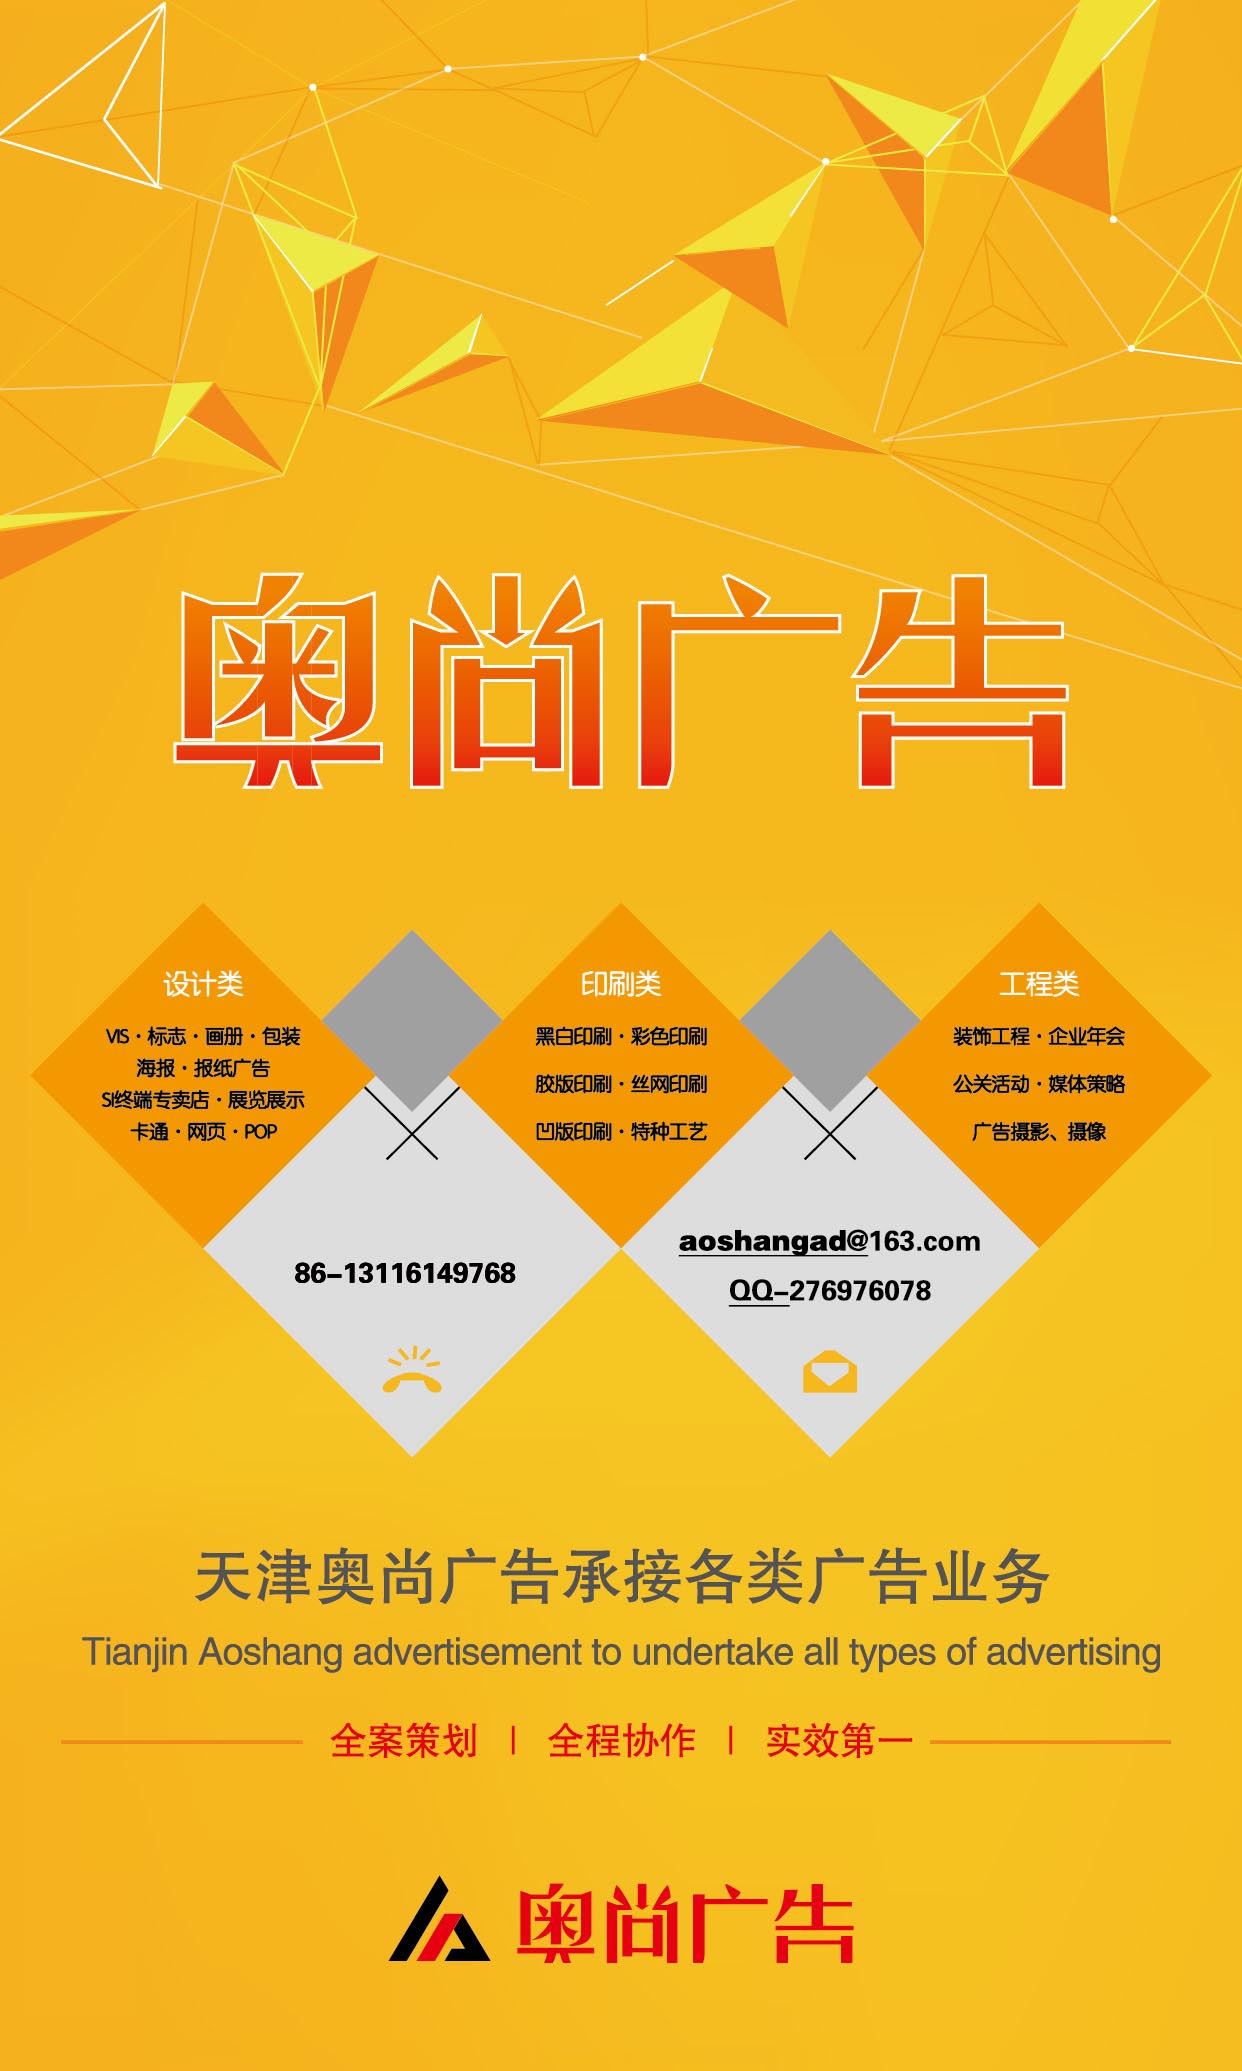 奥尚广告 天津广告 平面设计 印刷 制作